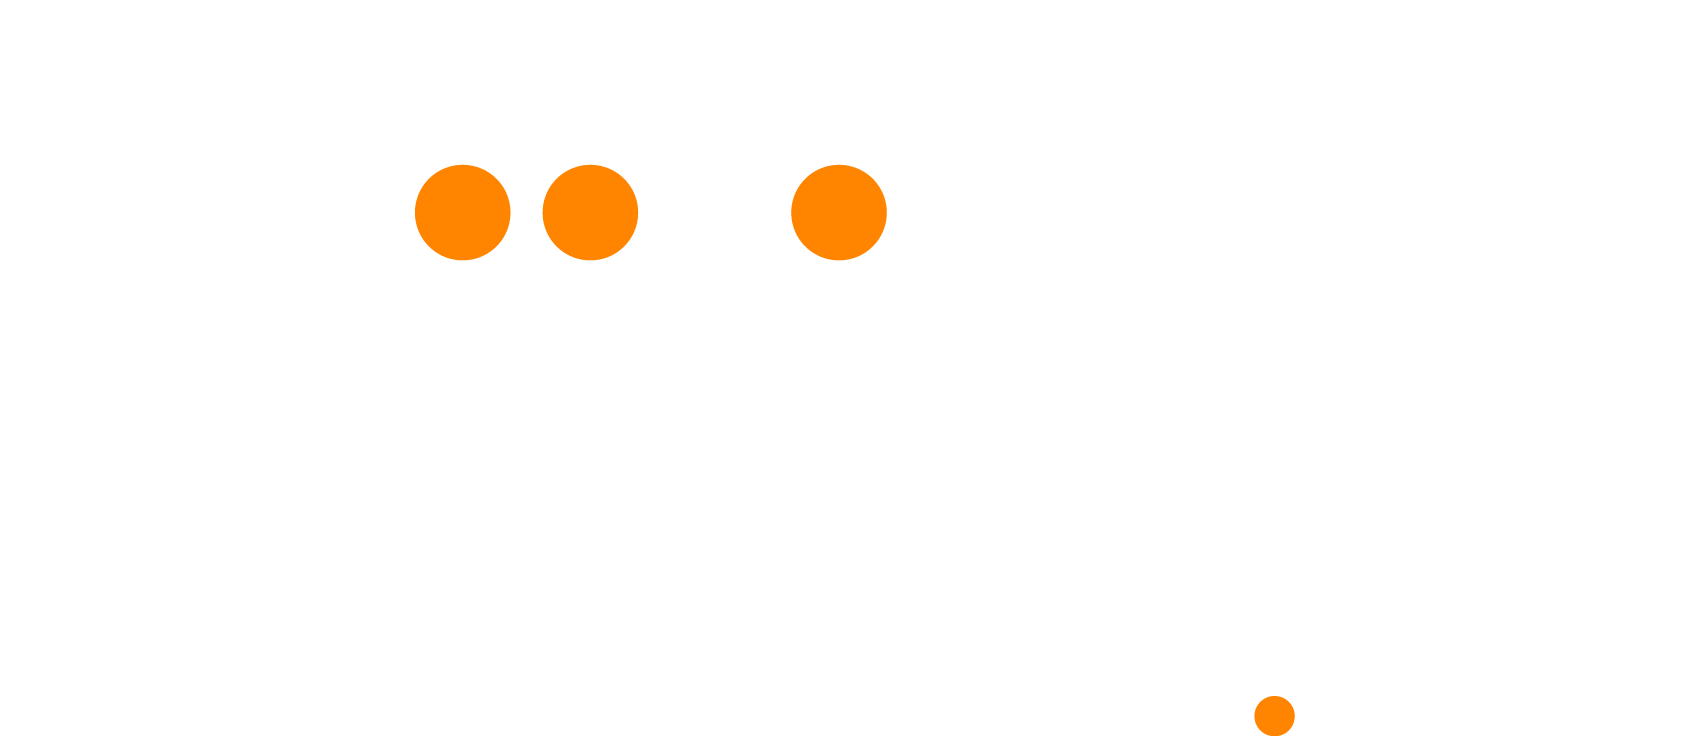 co.biiligo.com